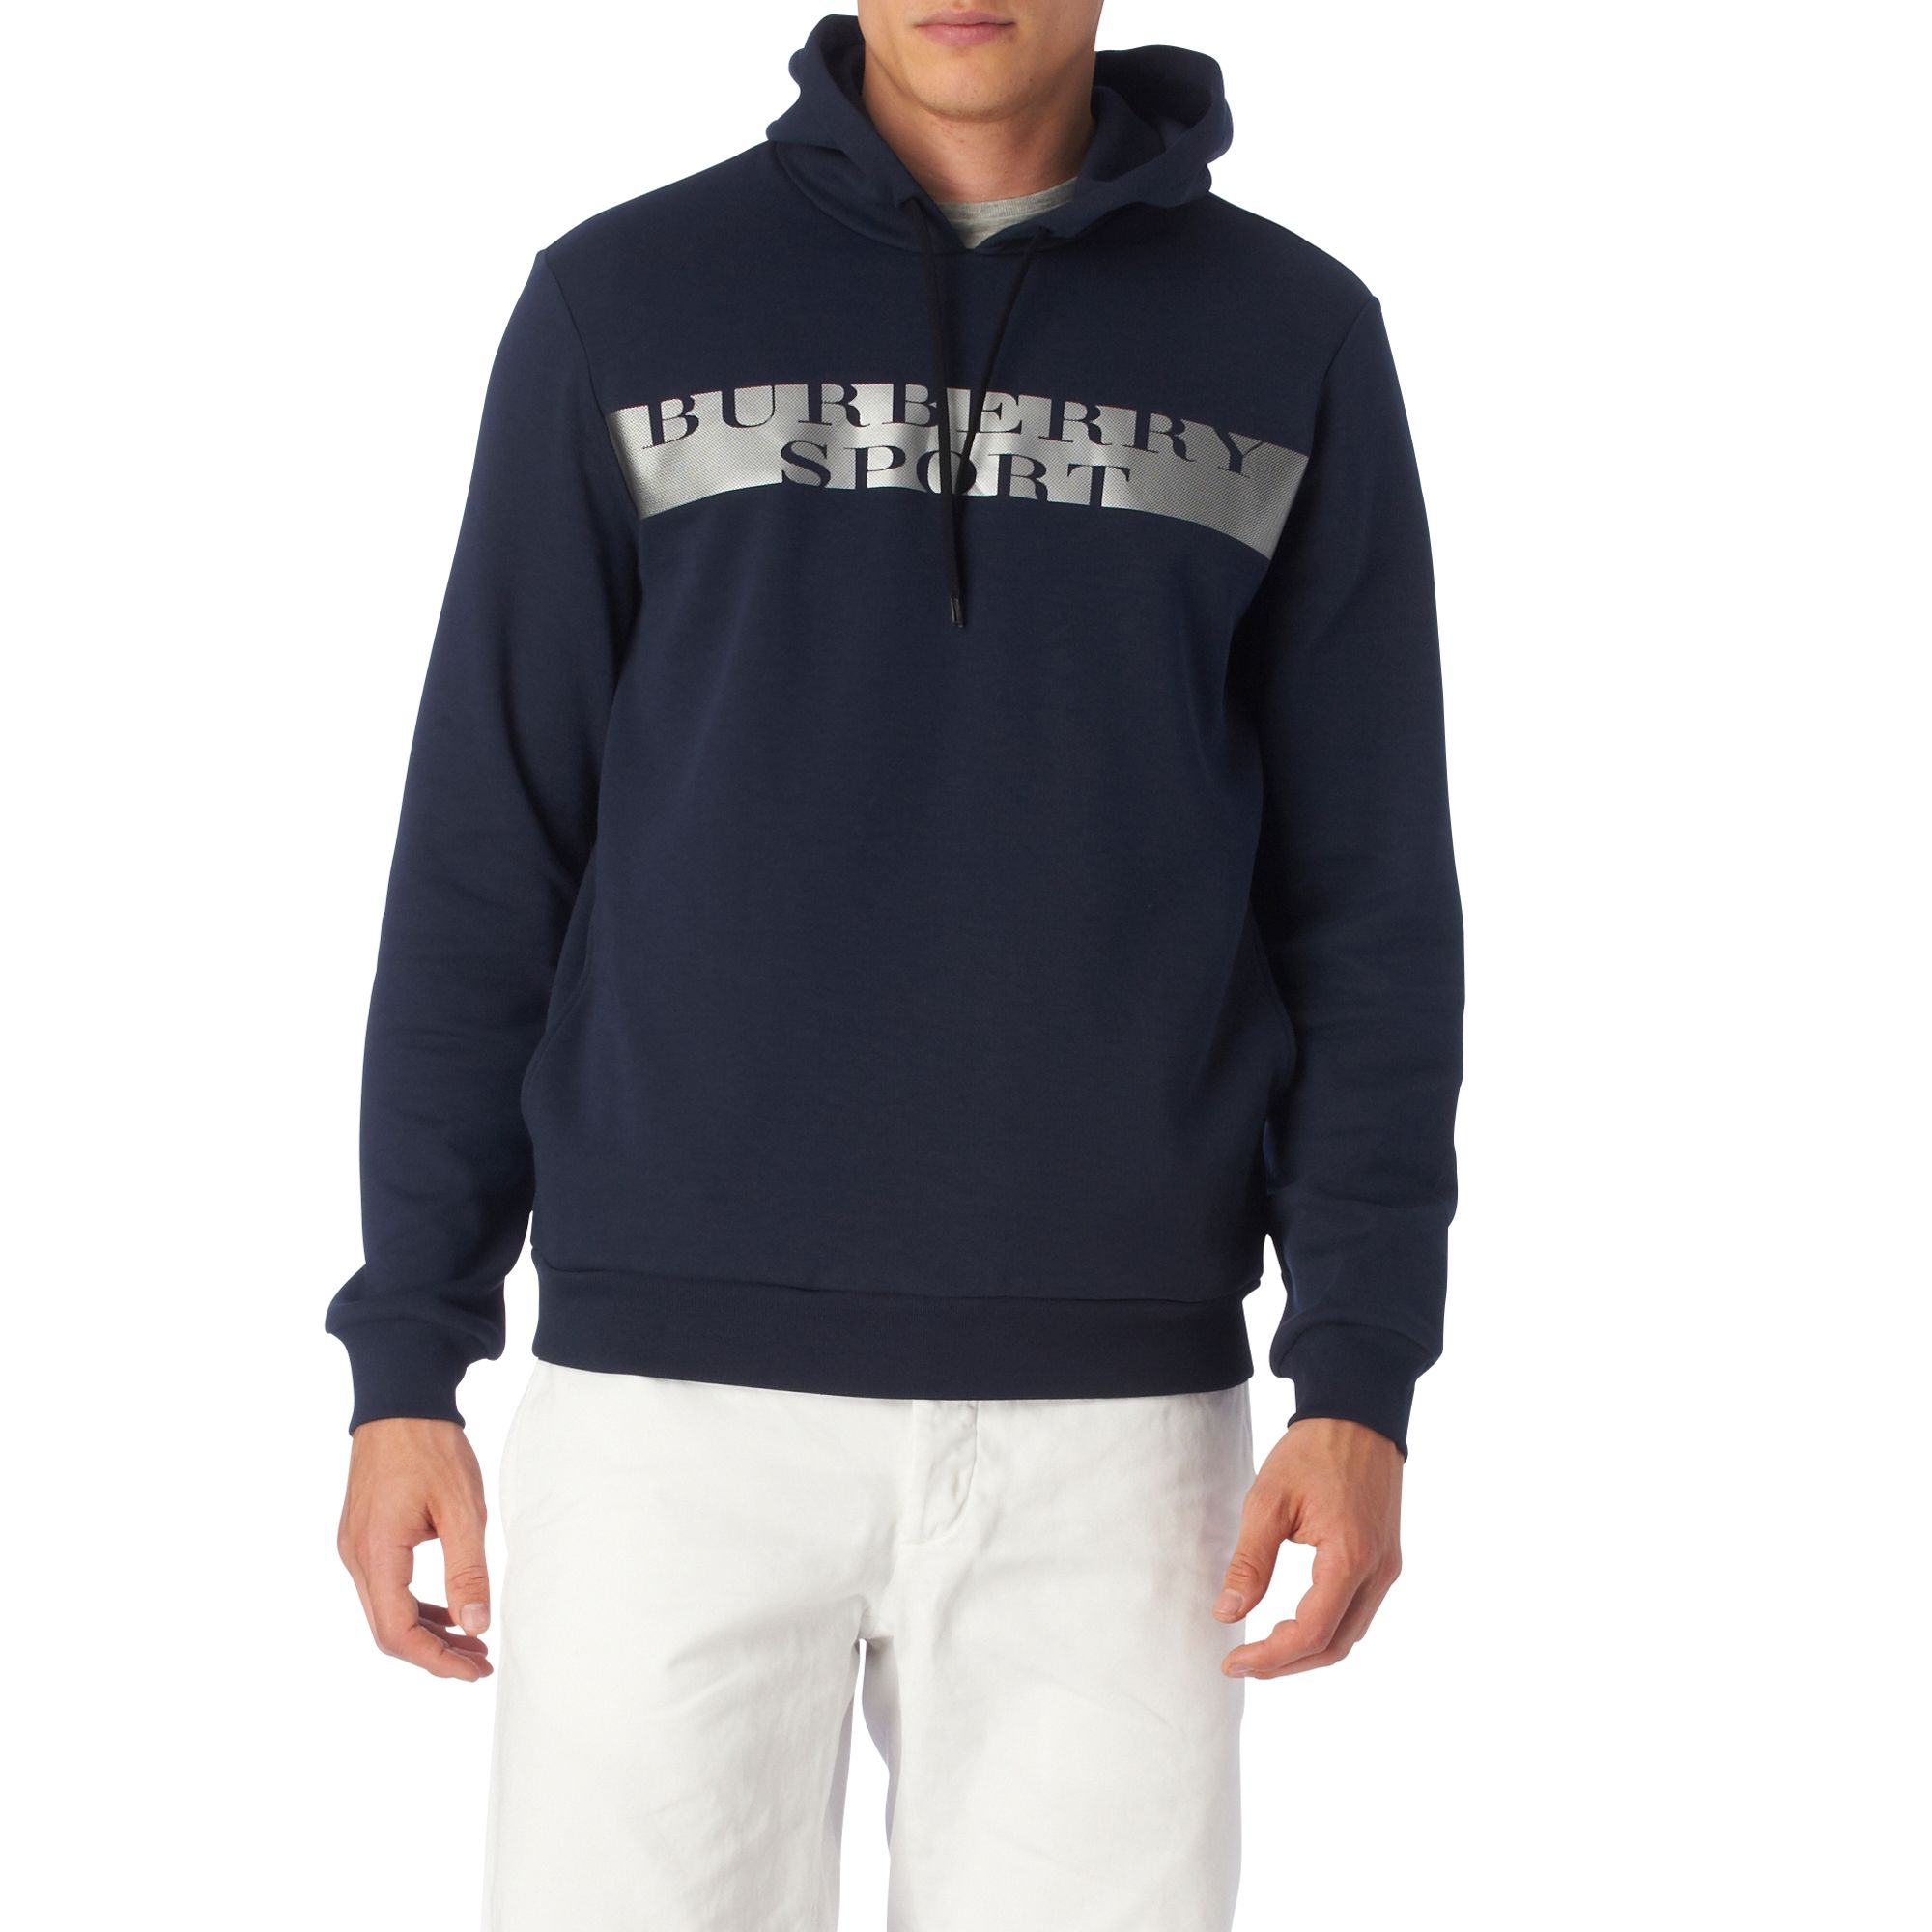 burberry sport hoodie